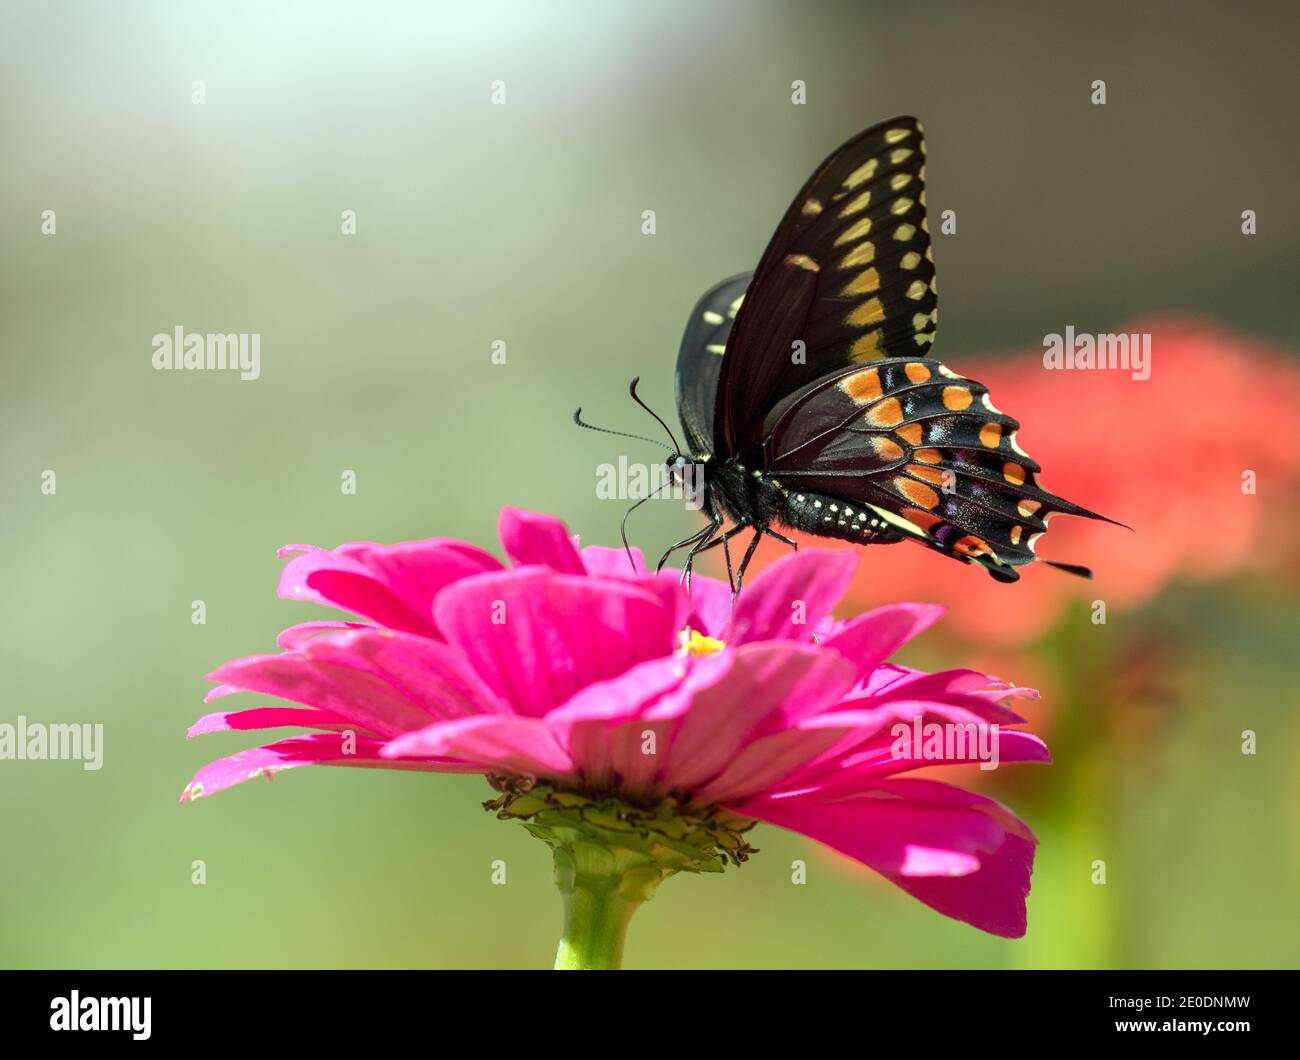 Gros plan, profil latéral d'un papillon noir à queue jaune (Papilio polyxenes) se nourrissant du nectar de la fleur rose de Zinnia dans le jardin canadien. Banque D'Images